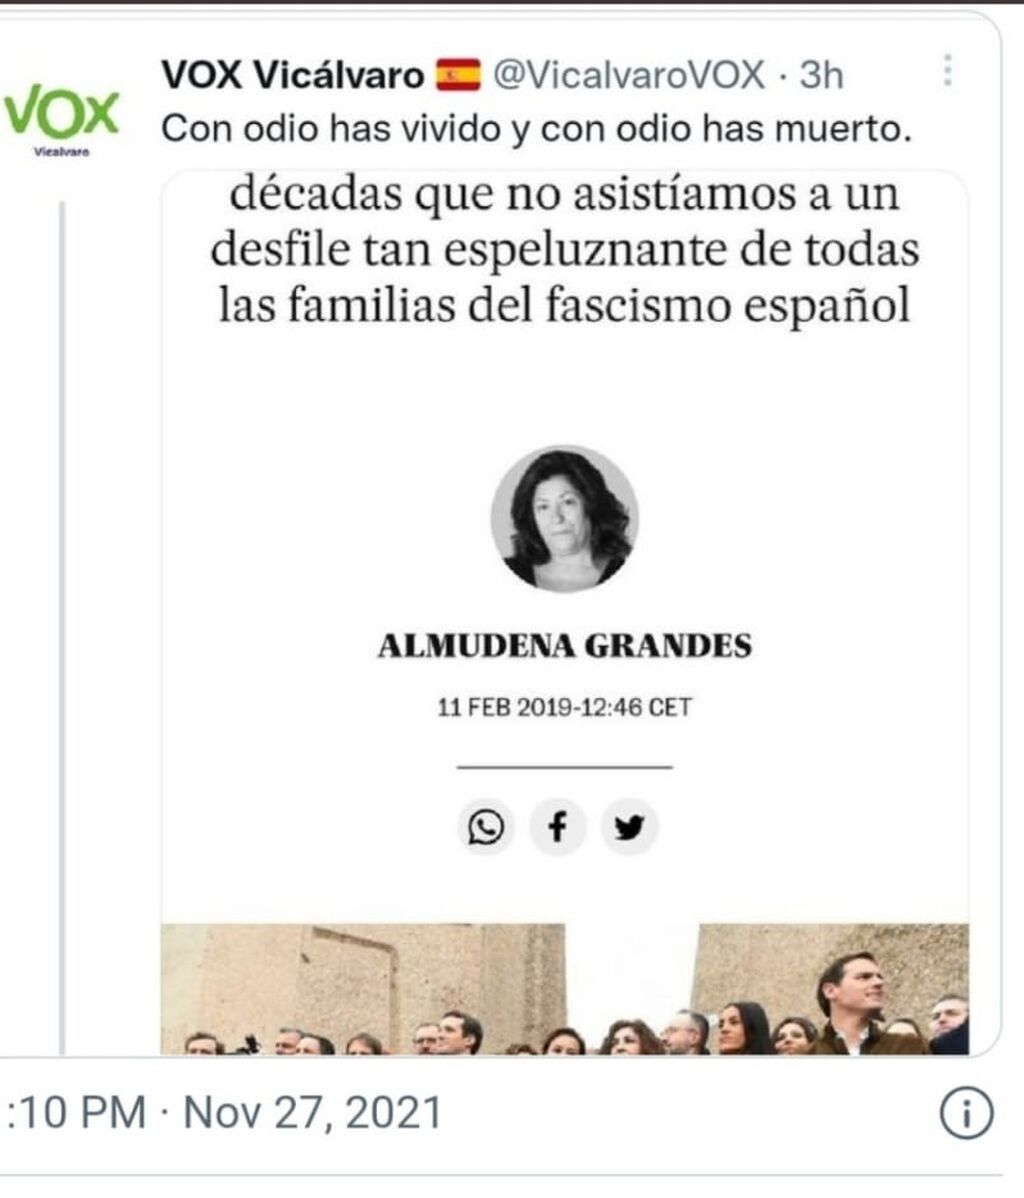 El polémico tuit de VOX sobre la muerte de Almudena Grande